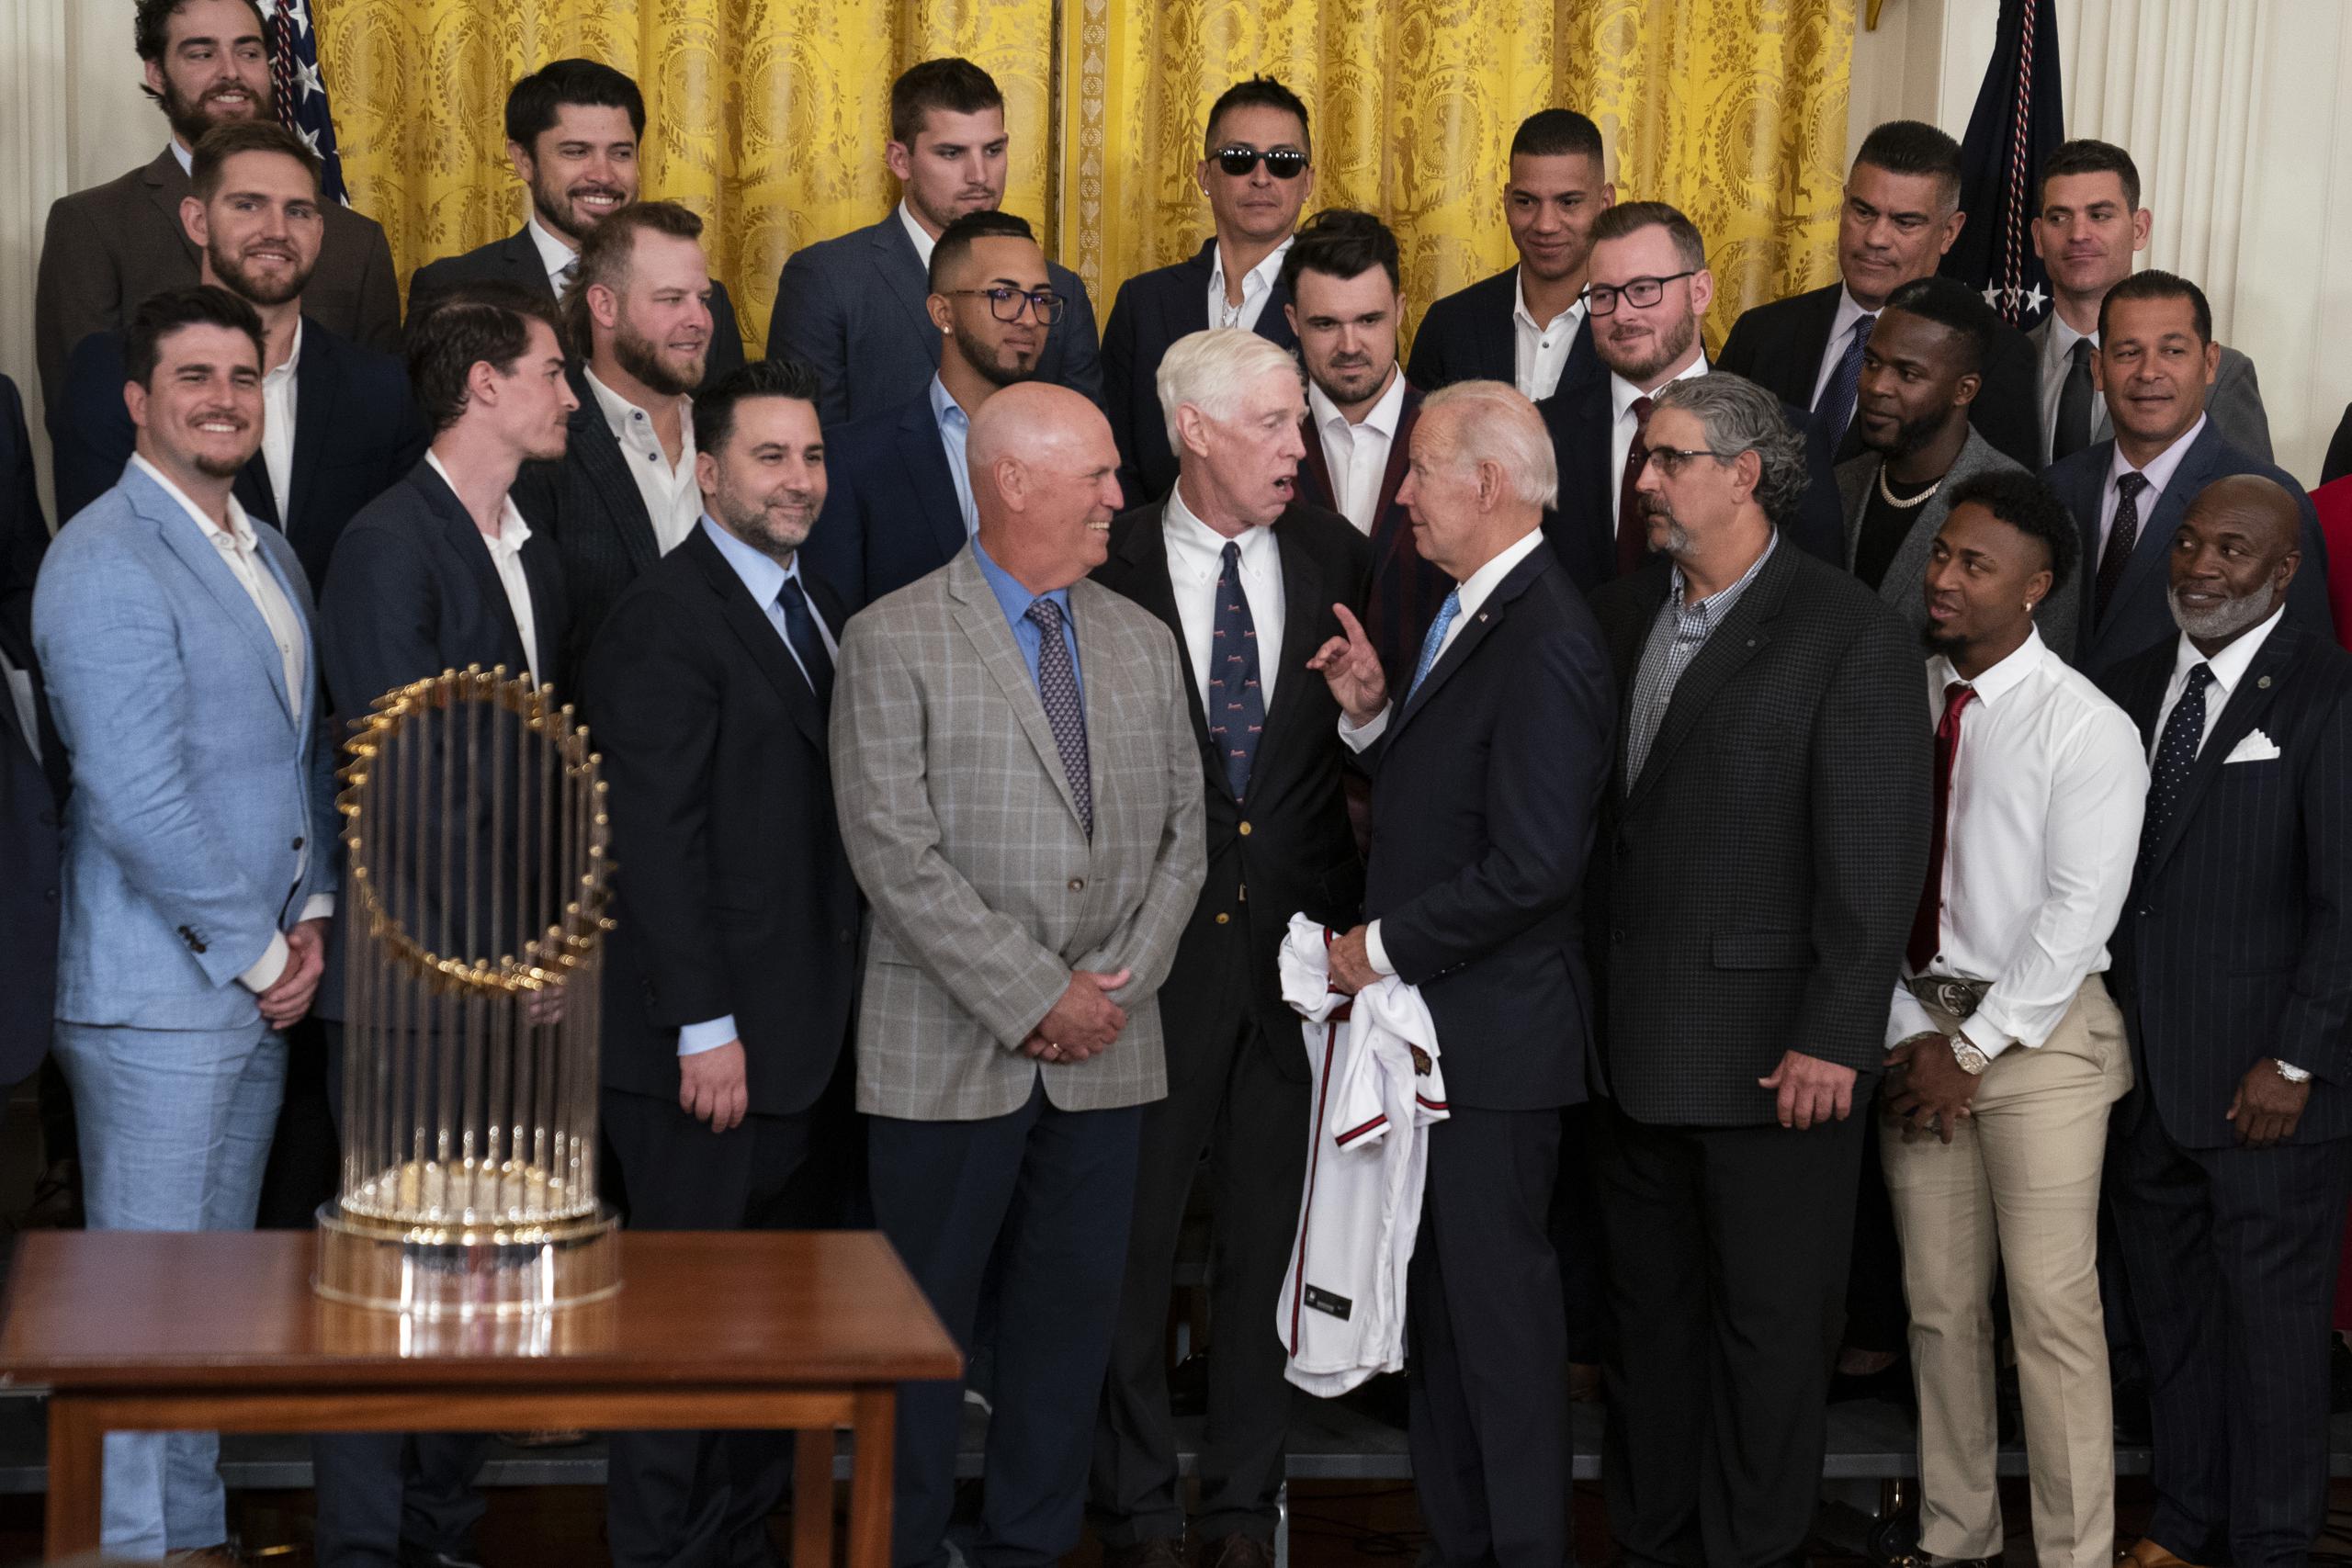 El presidente Joe Biden conversa con el dirigente de los Braves, Brian Snitker, antes de posar para una foto junto a todos los integrantes del equipo.